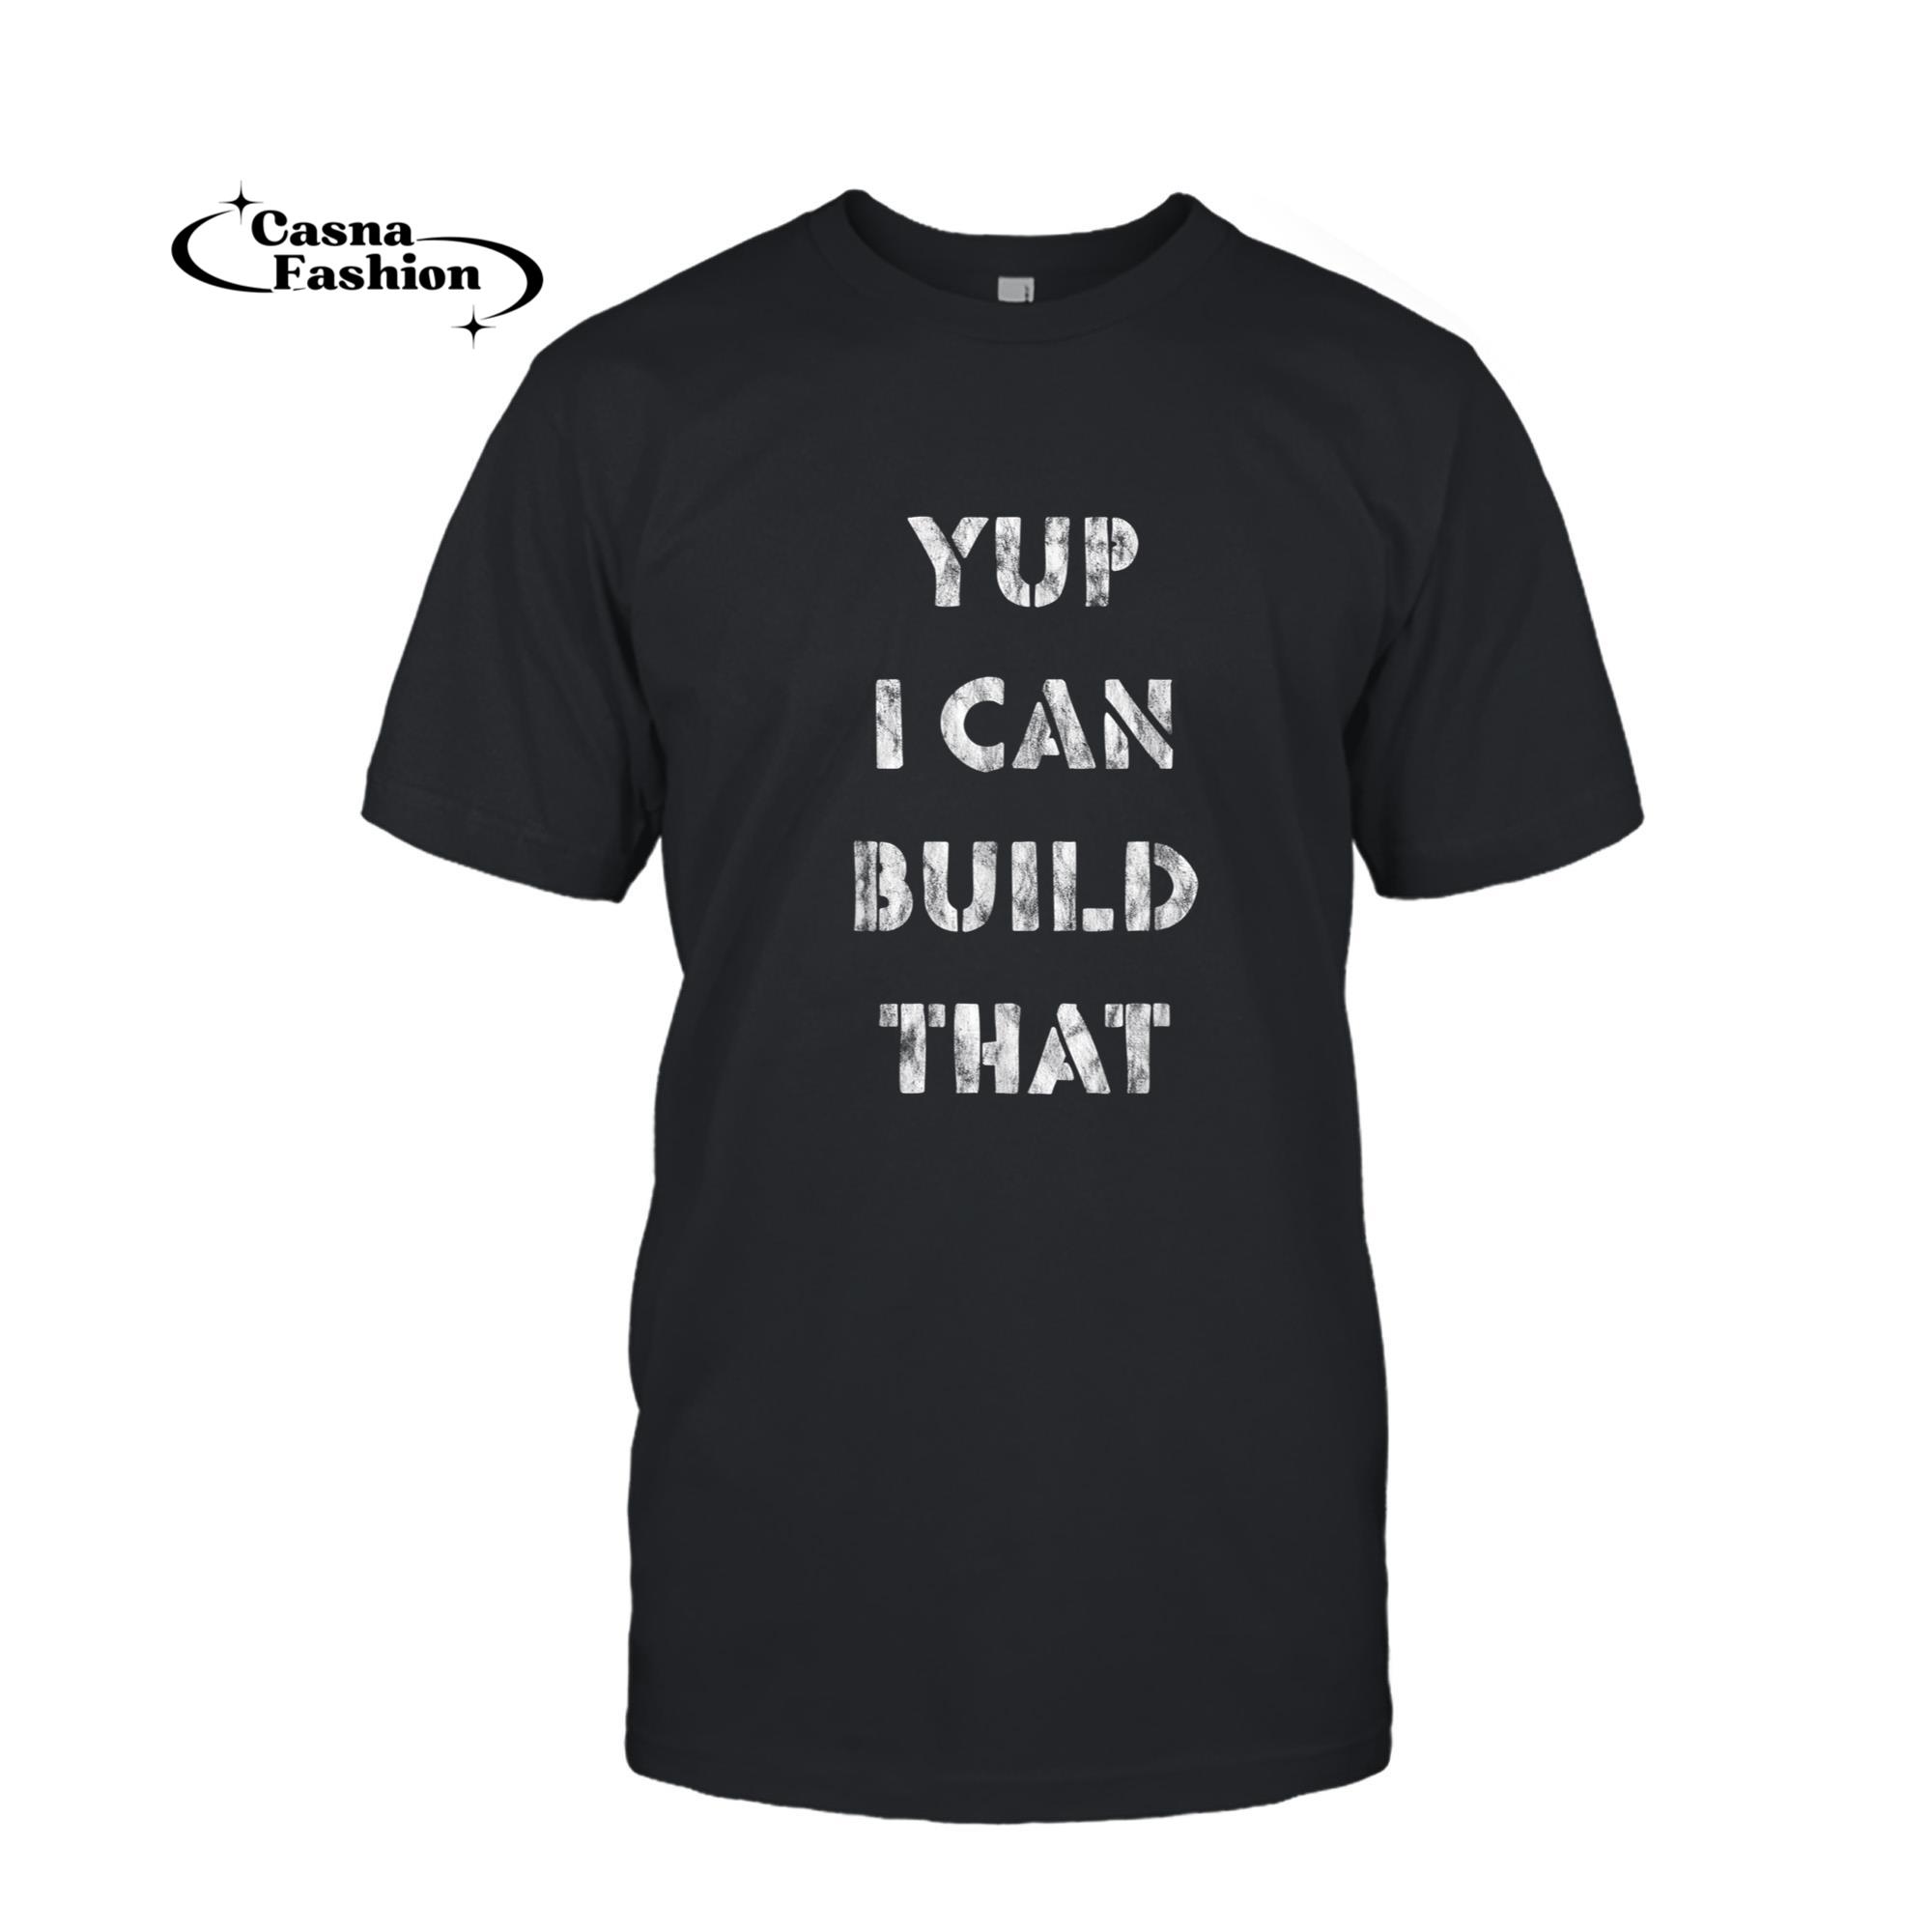 casnafashion_T-shirt_Yup I Can Build That - T-Shirt_T-shirt_Black